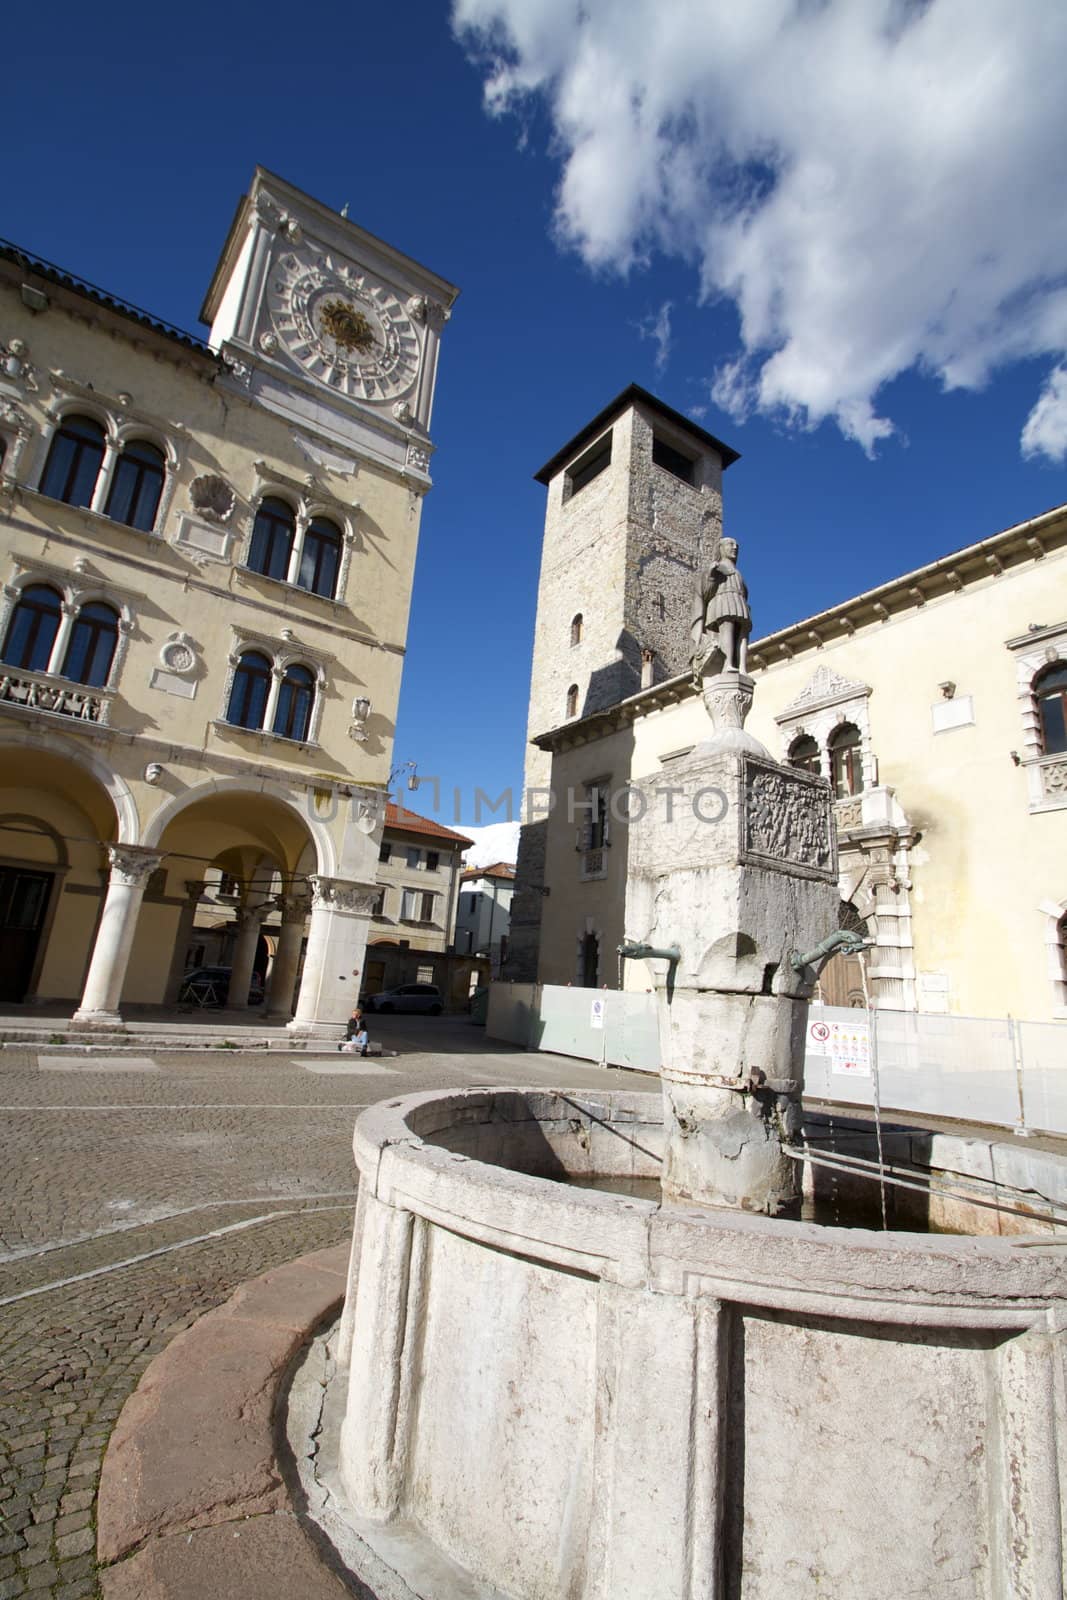 Palazzo dei Rettori and the Torre Civica, important buildings in the Dolomites city of Belluno